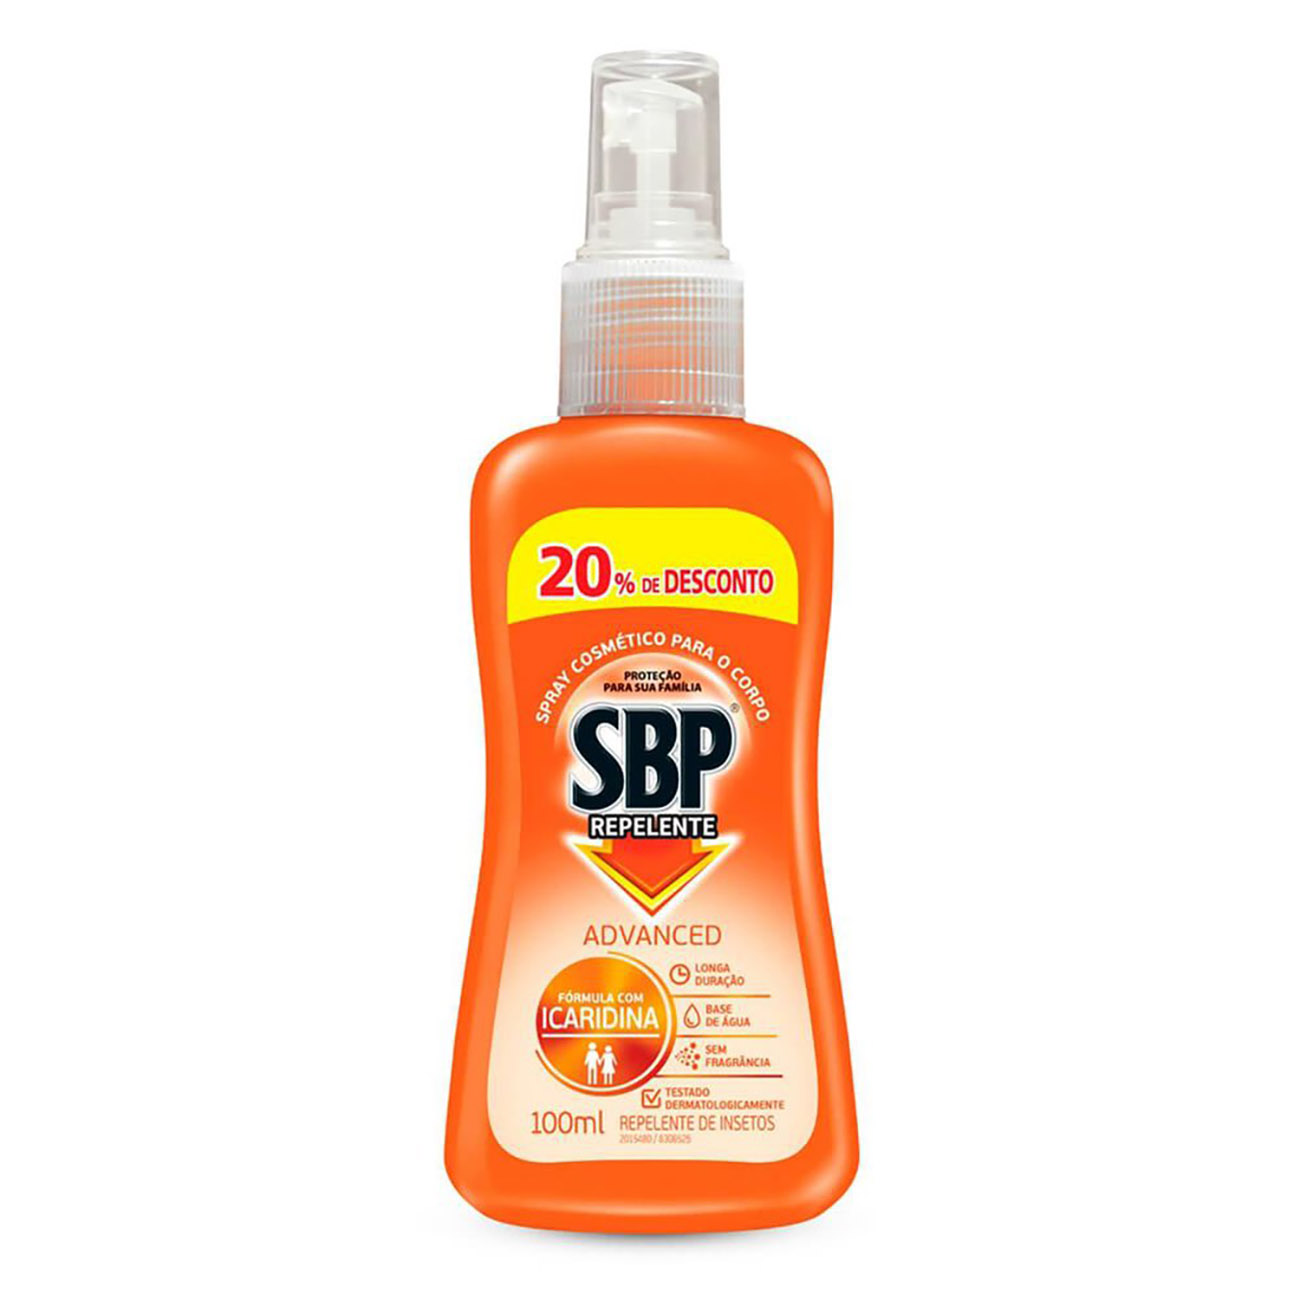 Repelente SBP Family Spray 100mL com 20% de desconto